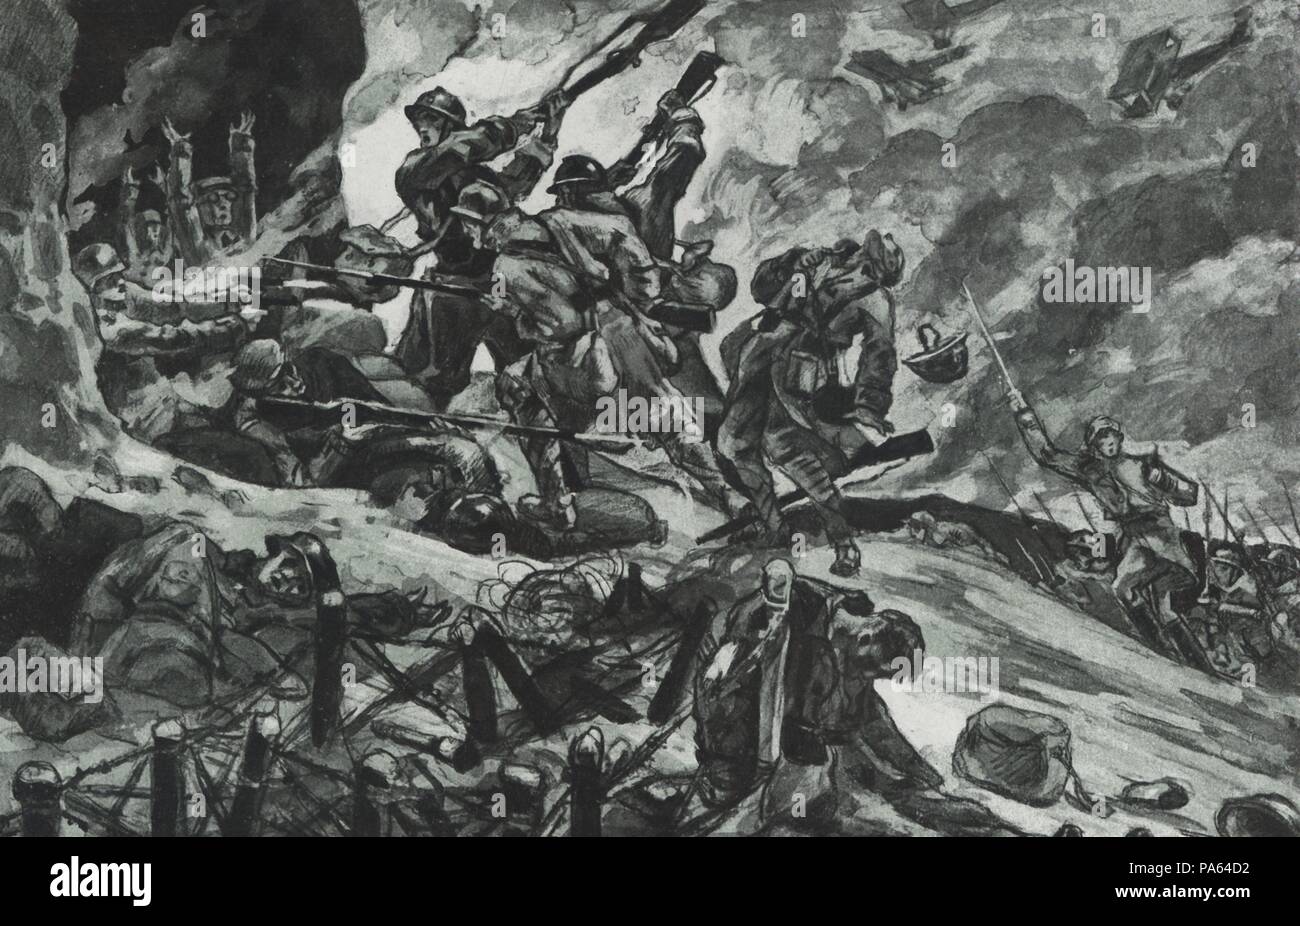 Primera guerra mundial (1914-1918). Reconquista por las tropas francesas del fuerte de Vaux. Grabado de 1916. Stock Photo